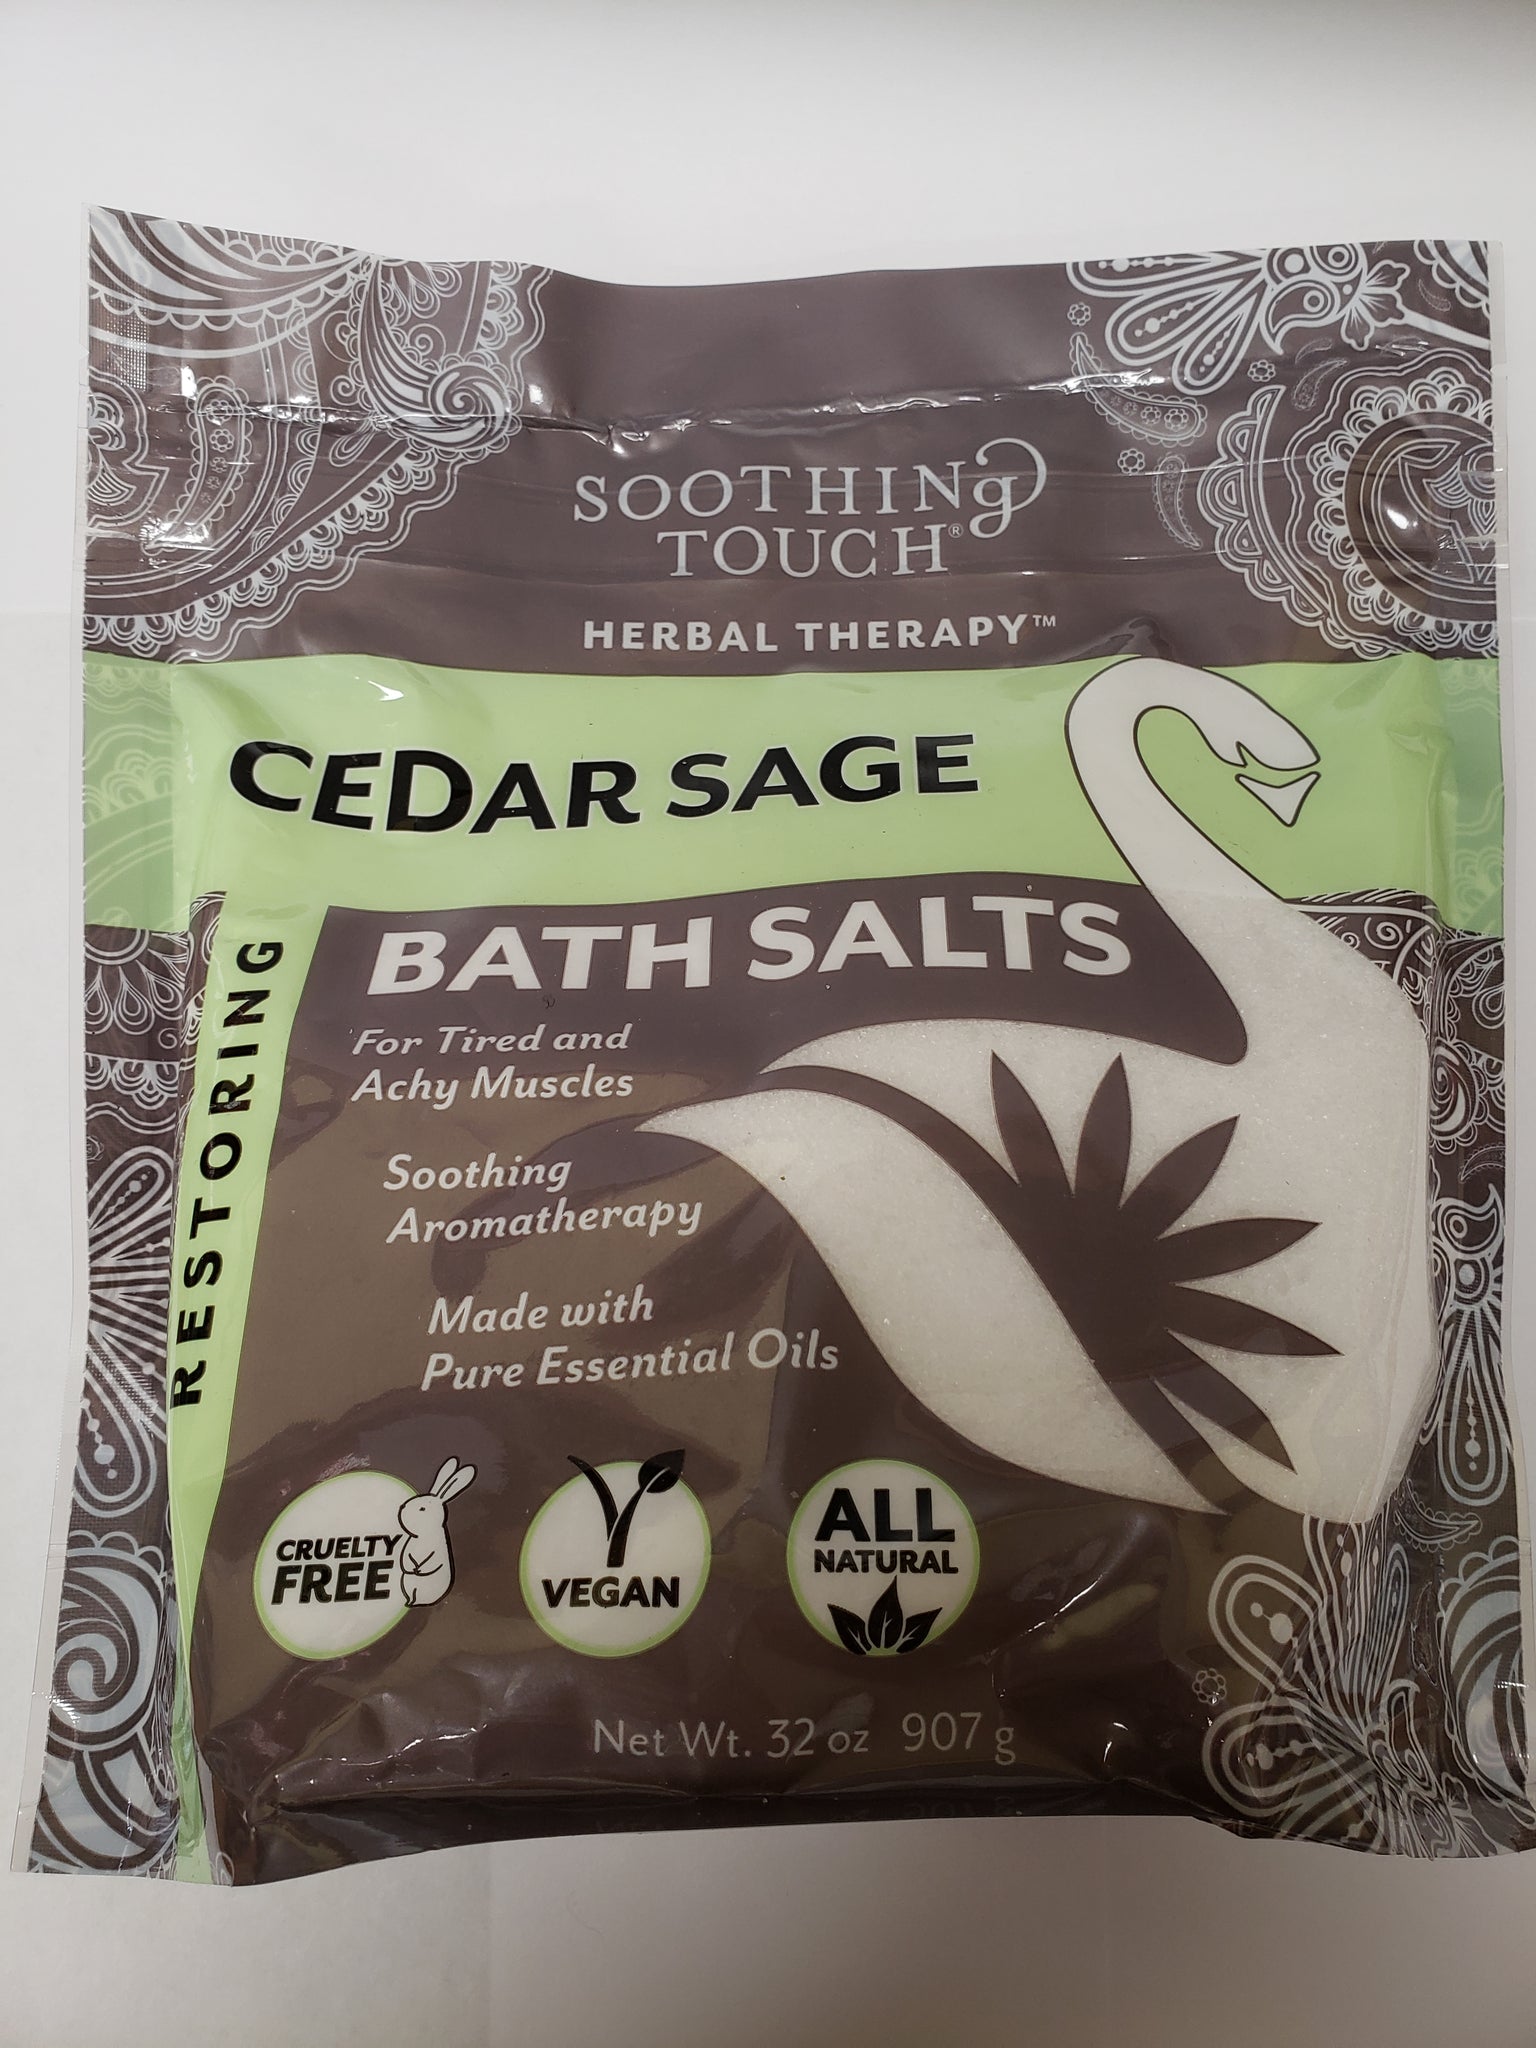 Soothing Touch Bath Salts - Cedar Sage